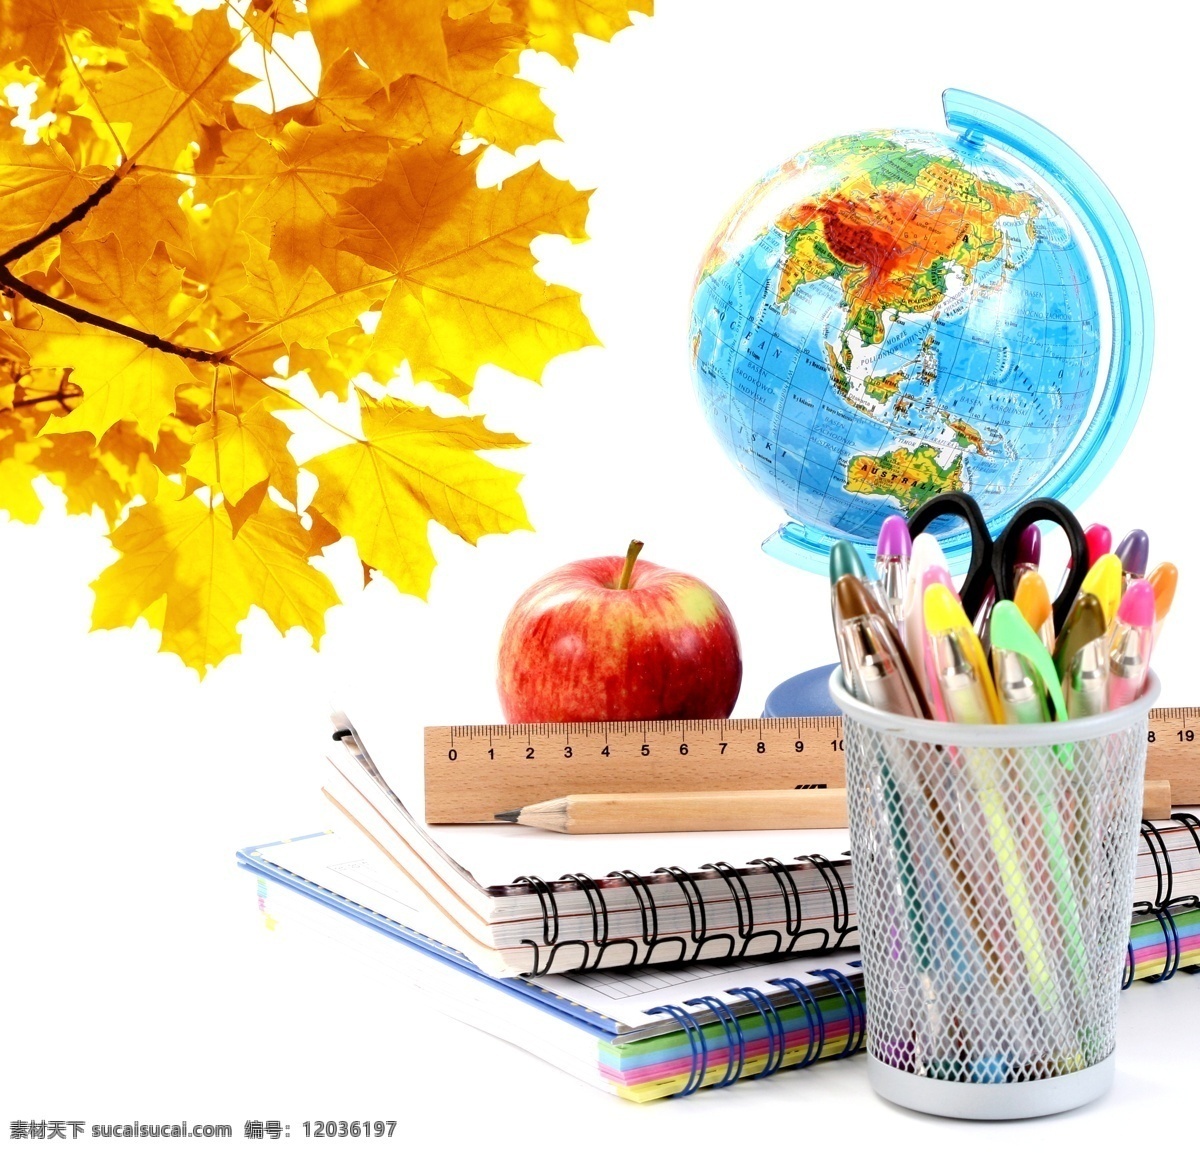 铅笔 地球仪 学习用品 物品 开学 上学 圆珠笔 笔筒 苹果 尺子 笔记本 树叶 枫叶 地球图片 环境家居